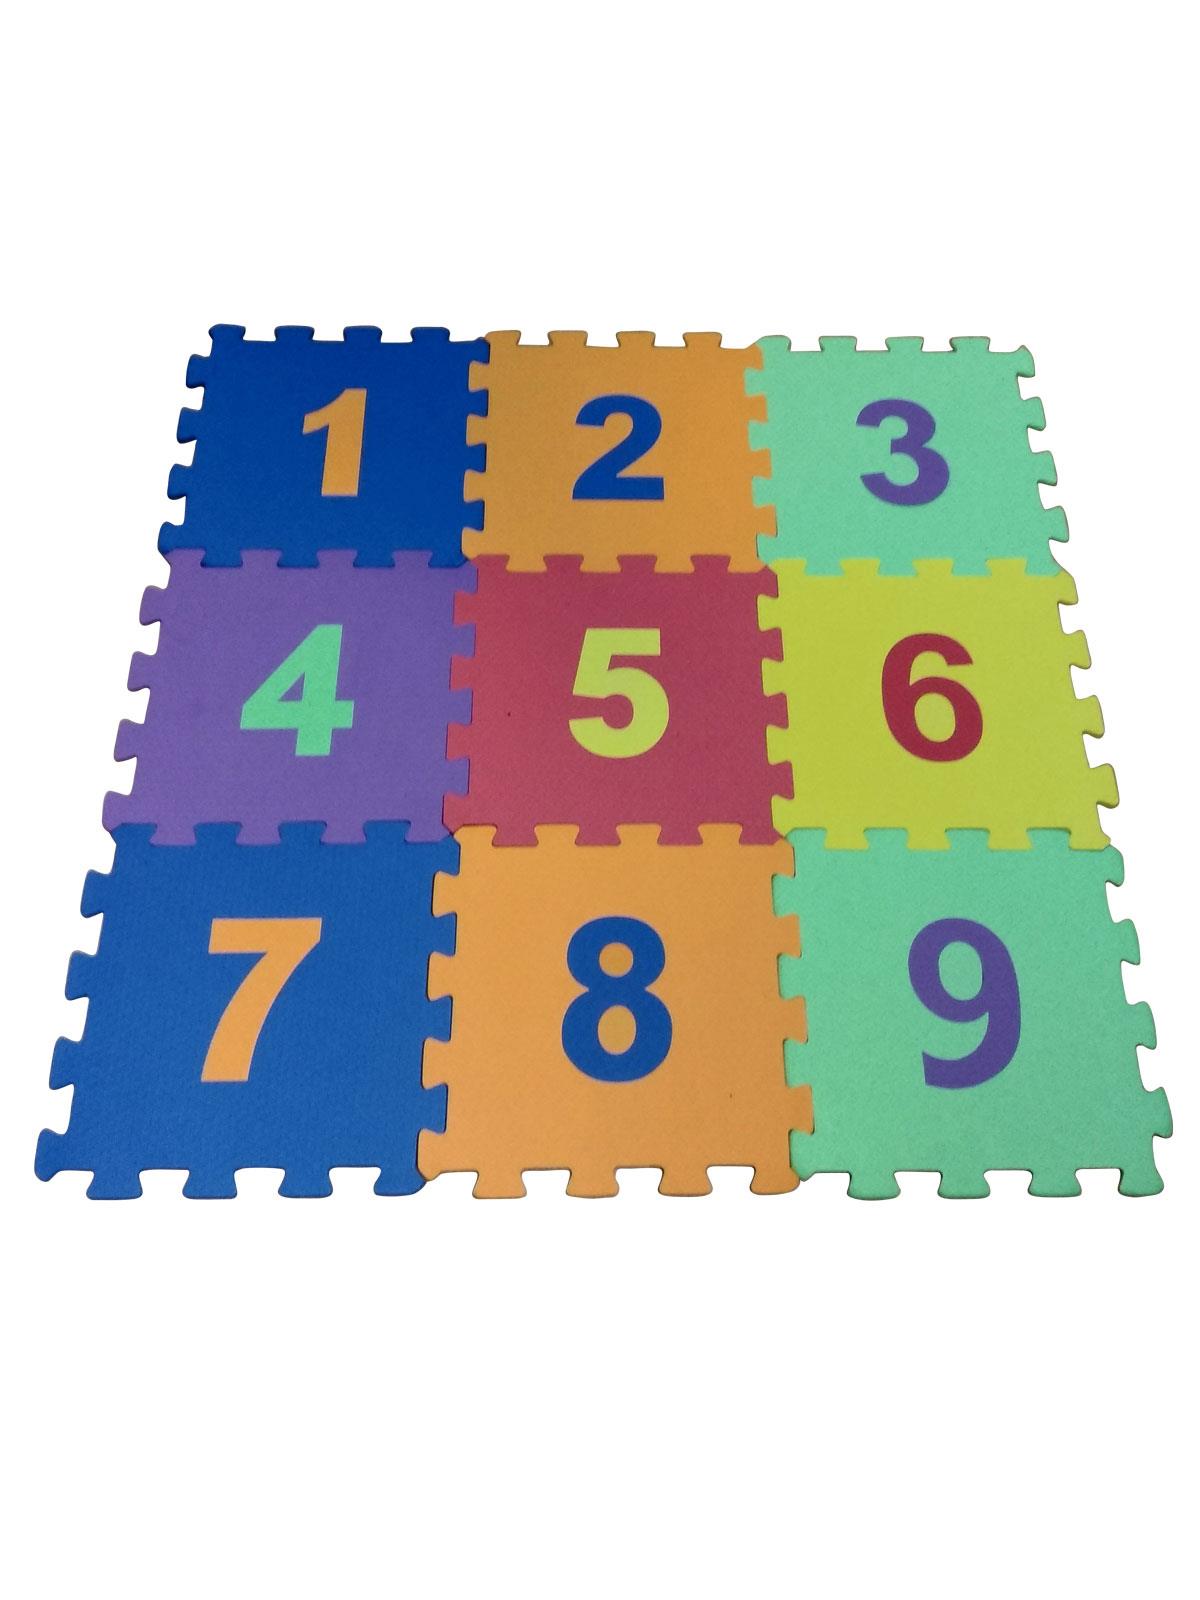 ELF101-C Elfobaby Eva Puzzle Oyun Matı 9 Parça  33cm x 33cm Sayılar Temalı